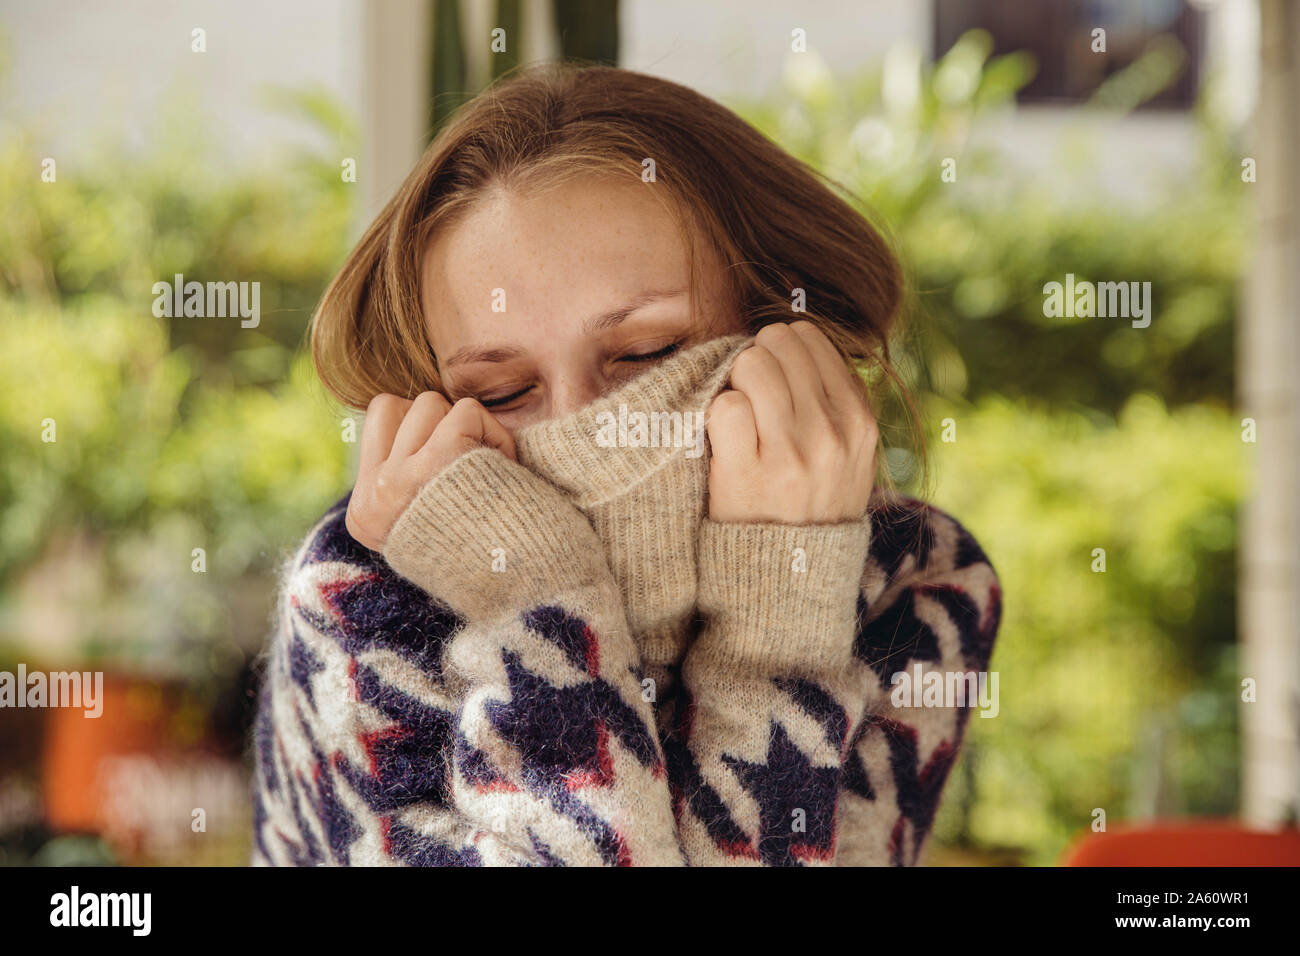 Retrato de mujer joven con los ojos cerrados se hunde en su jersey de lana Foto de stock